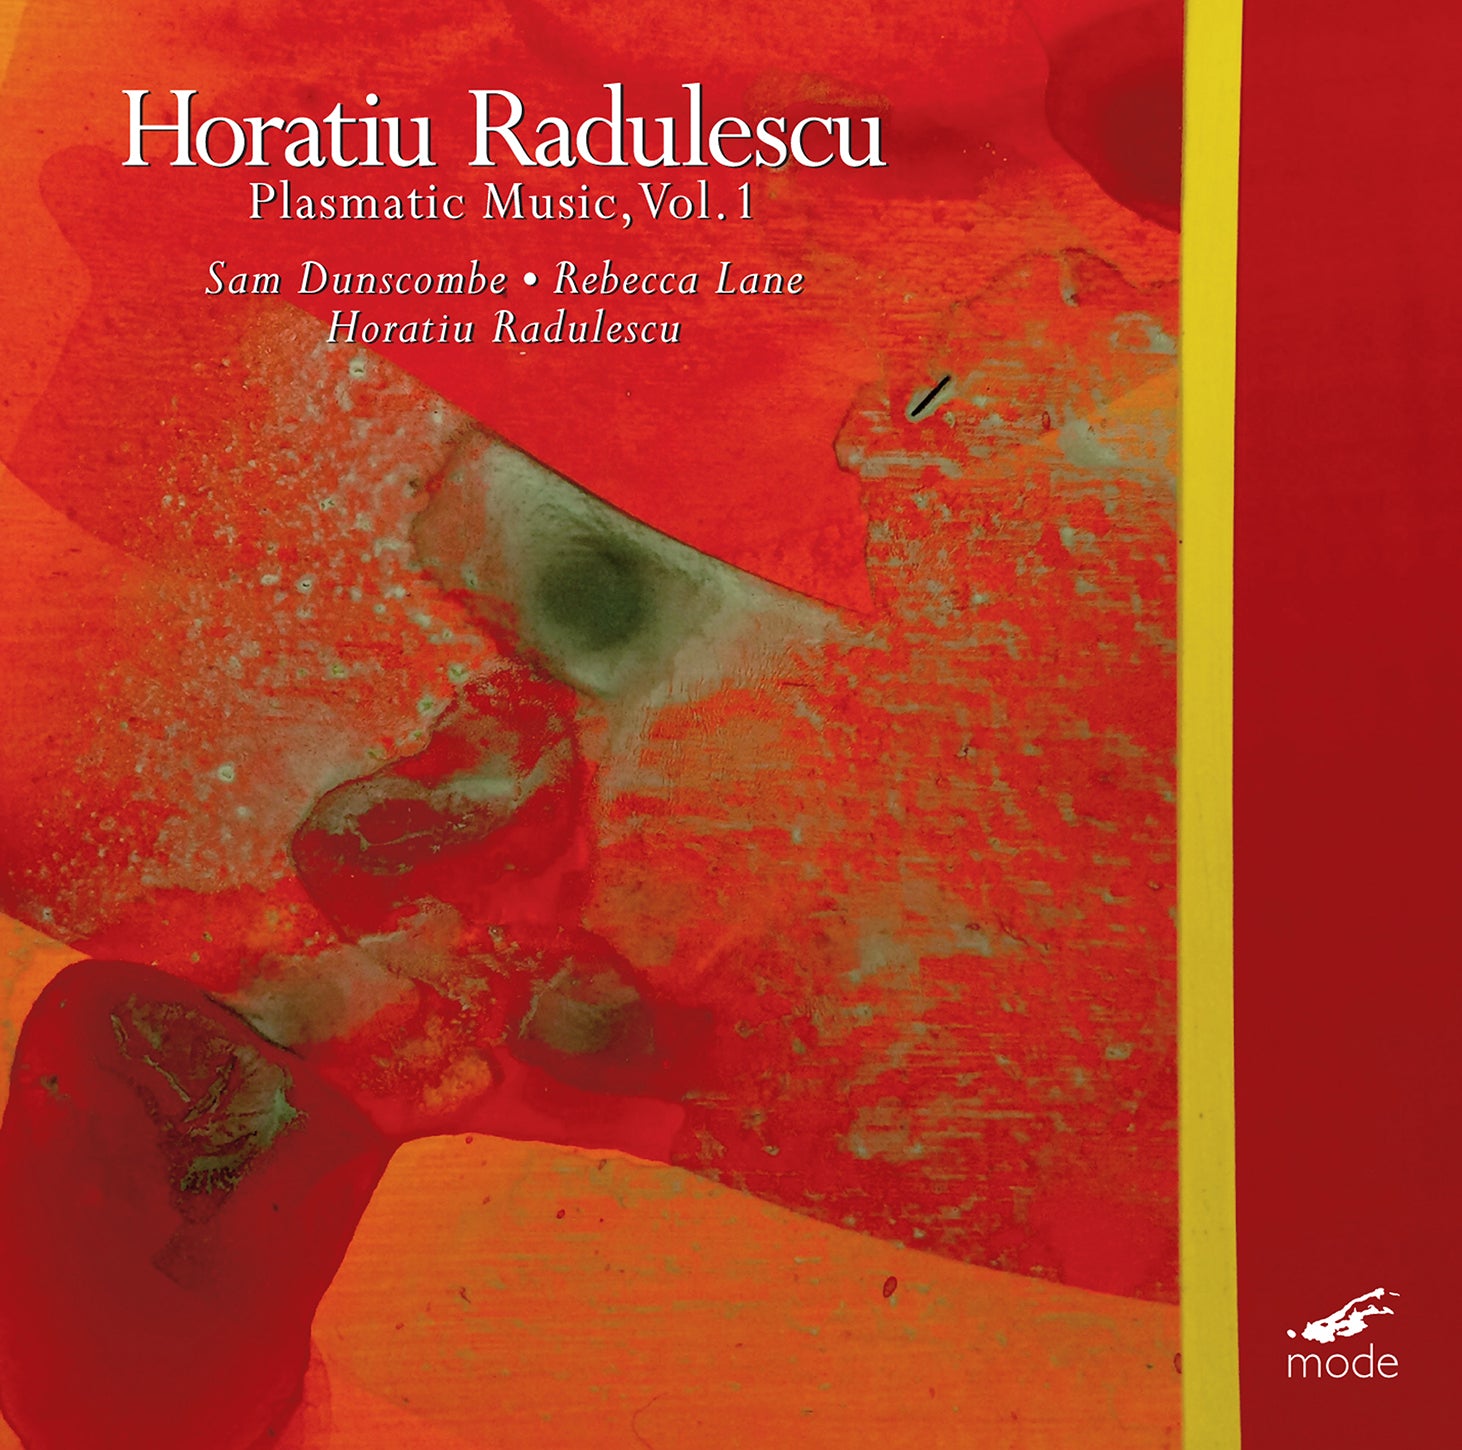 Horațiu Rădulescu: Plasmatic Music / Dunscombe, Lane, Rădulescu